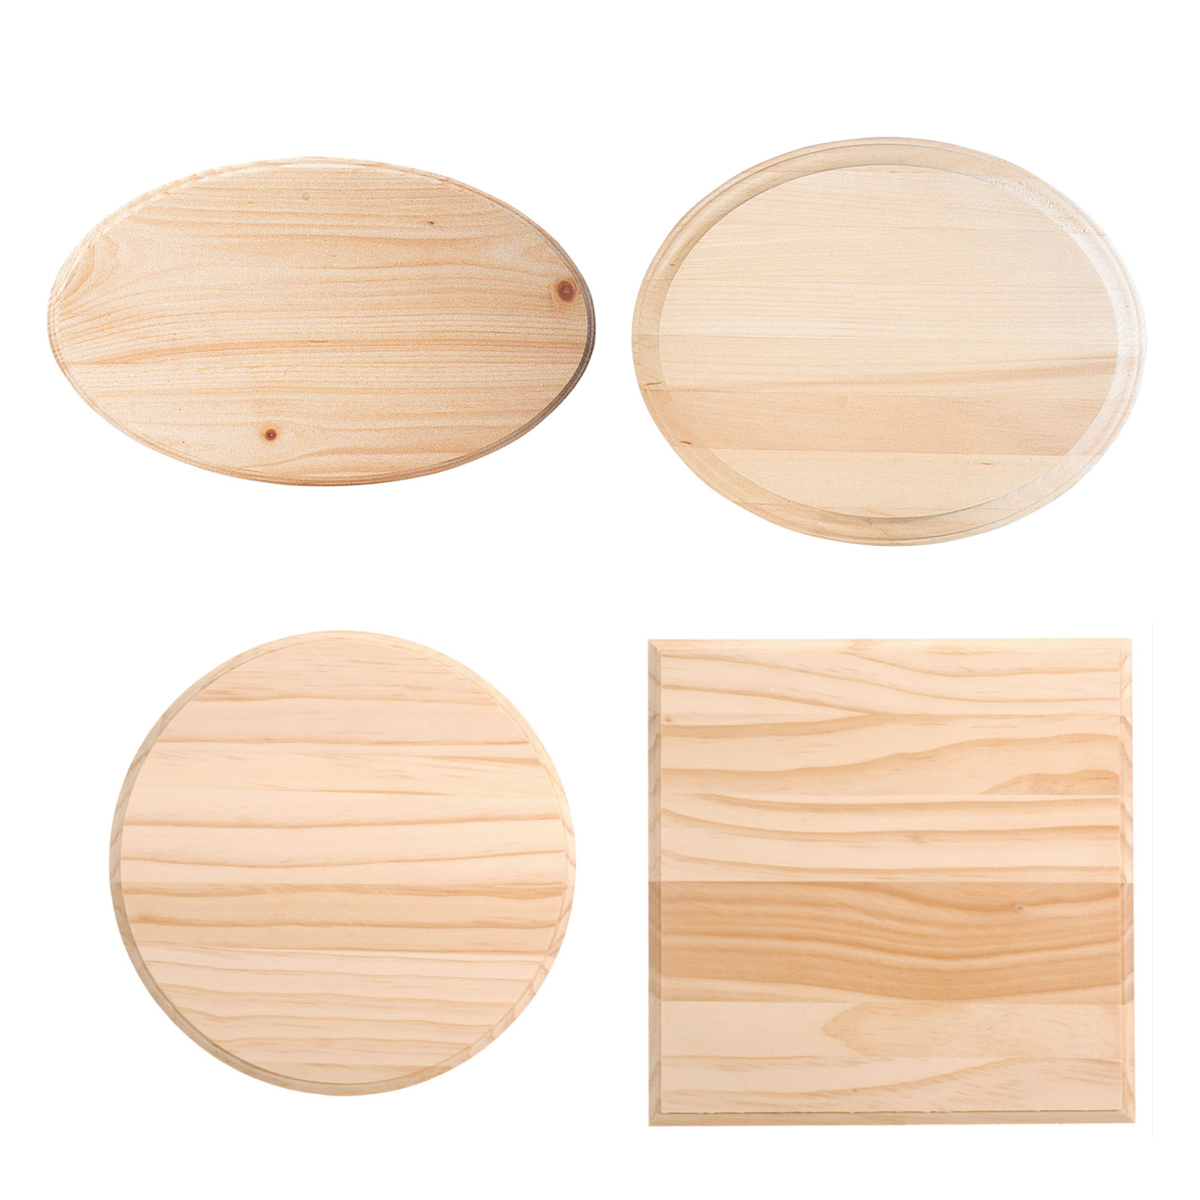 歐式風格木牌裝飾擺件手工原木置物架橢圓形圓形長方形可選